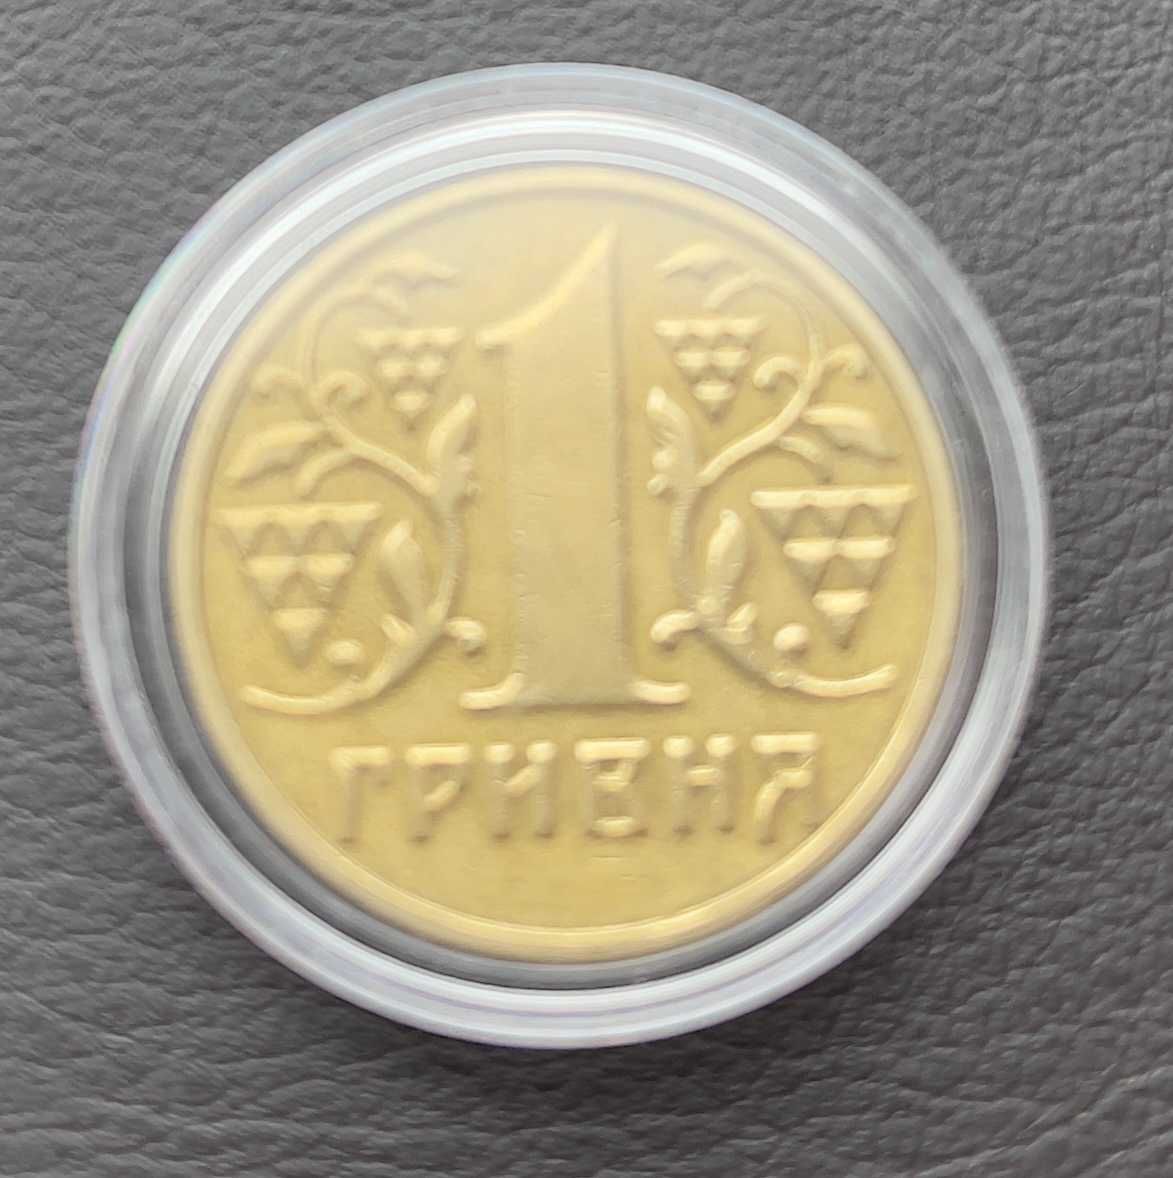 Монета 1 гривня рідкий малюнок 2001 року випуску